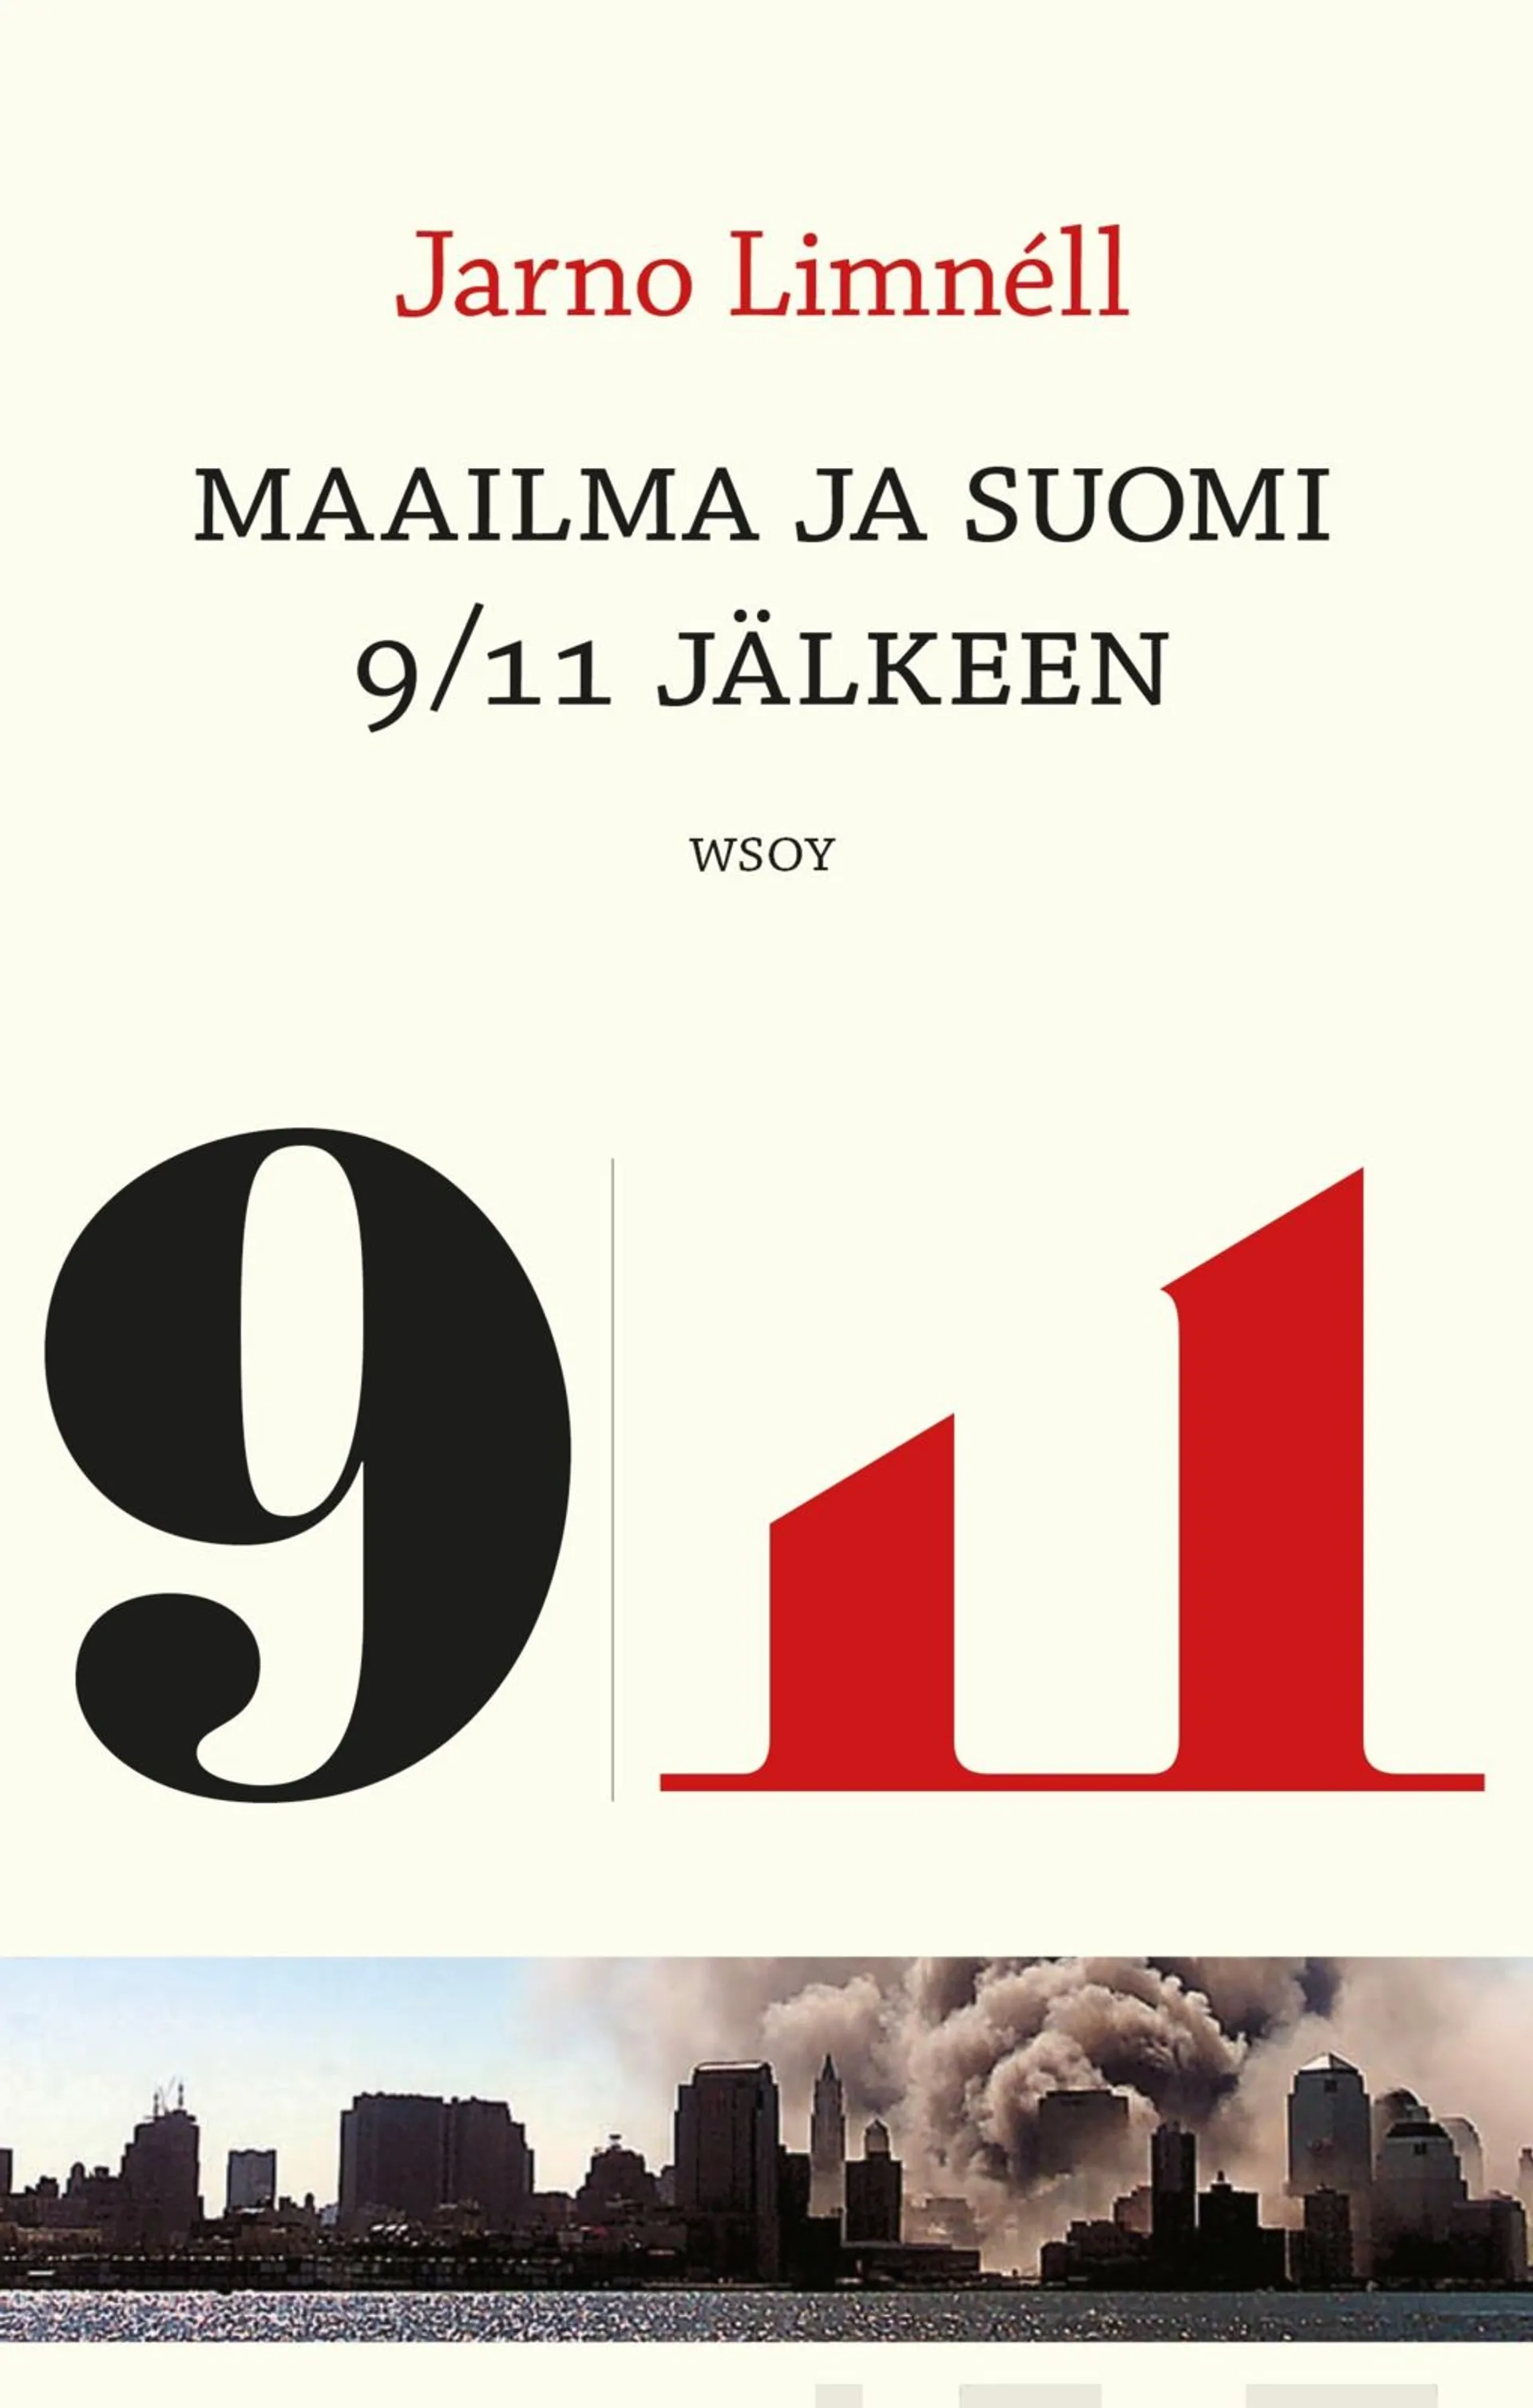 Maailma ja Suomi 9/11:n jälkeen